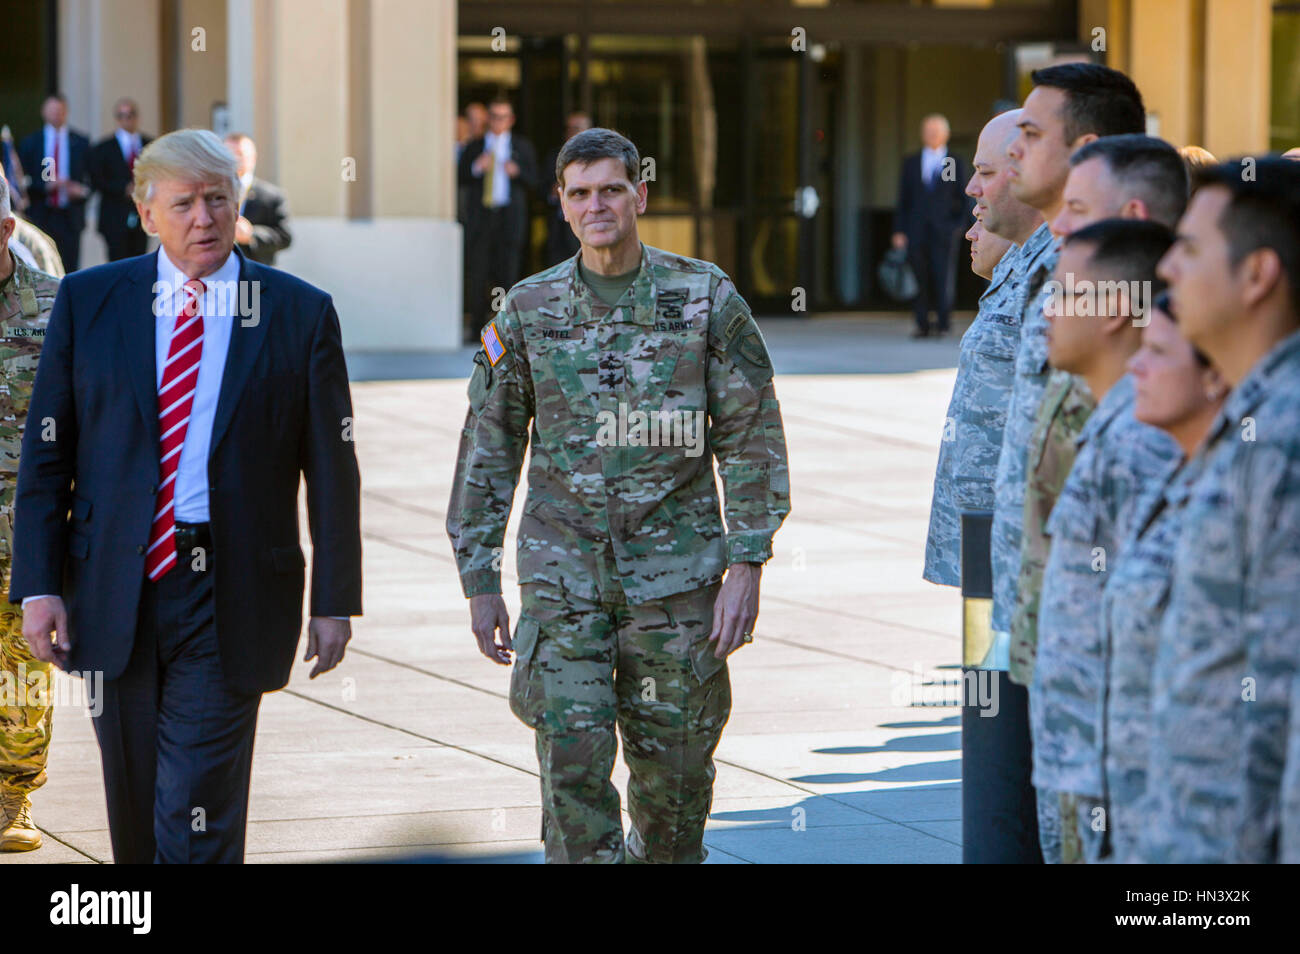 Président américain Donald Trump marche dernières escorté par des soldats de l'armée américaine le général Joseph Votel, lors d'une visite à l'U.S. Central Command à la base aérienne MacDill, 6 février 2017, à Tampa, en Floride. Credit : Planetpix/Alamy Live News Banque D'Images